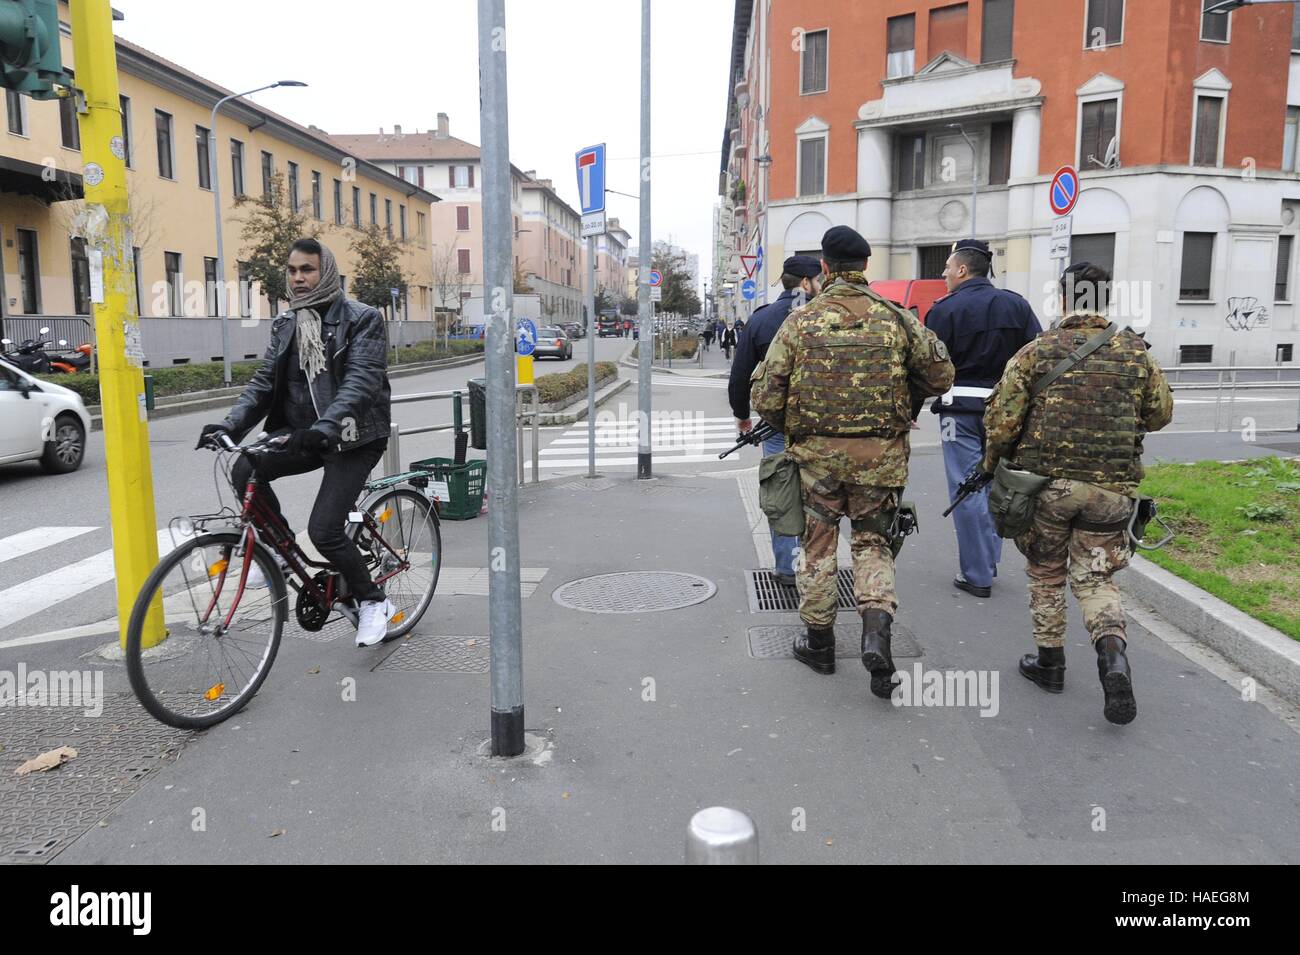 Milan, en novembre 2016, des patrouilles mixtes de police et l'armée pour le contrôle de la criminalité dans les régions à risque de la ville Banque D'Images